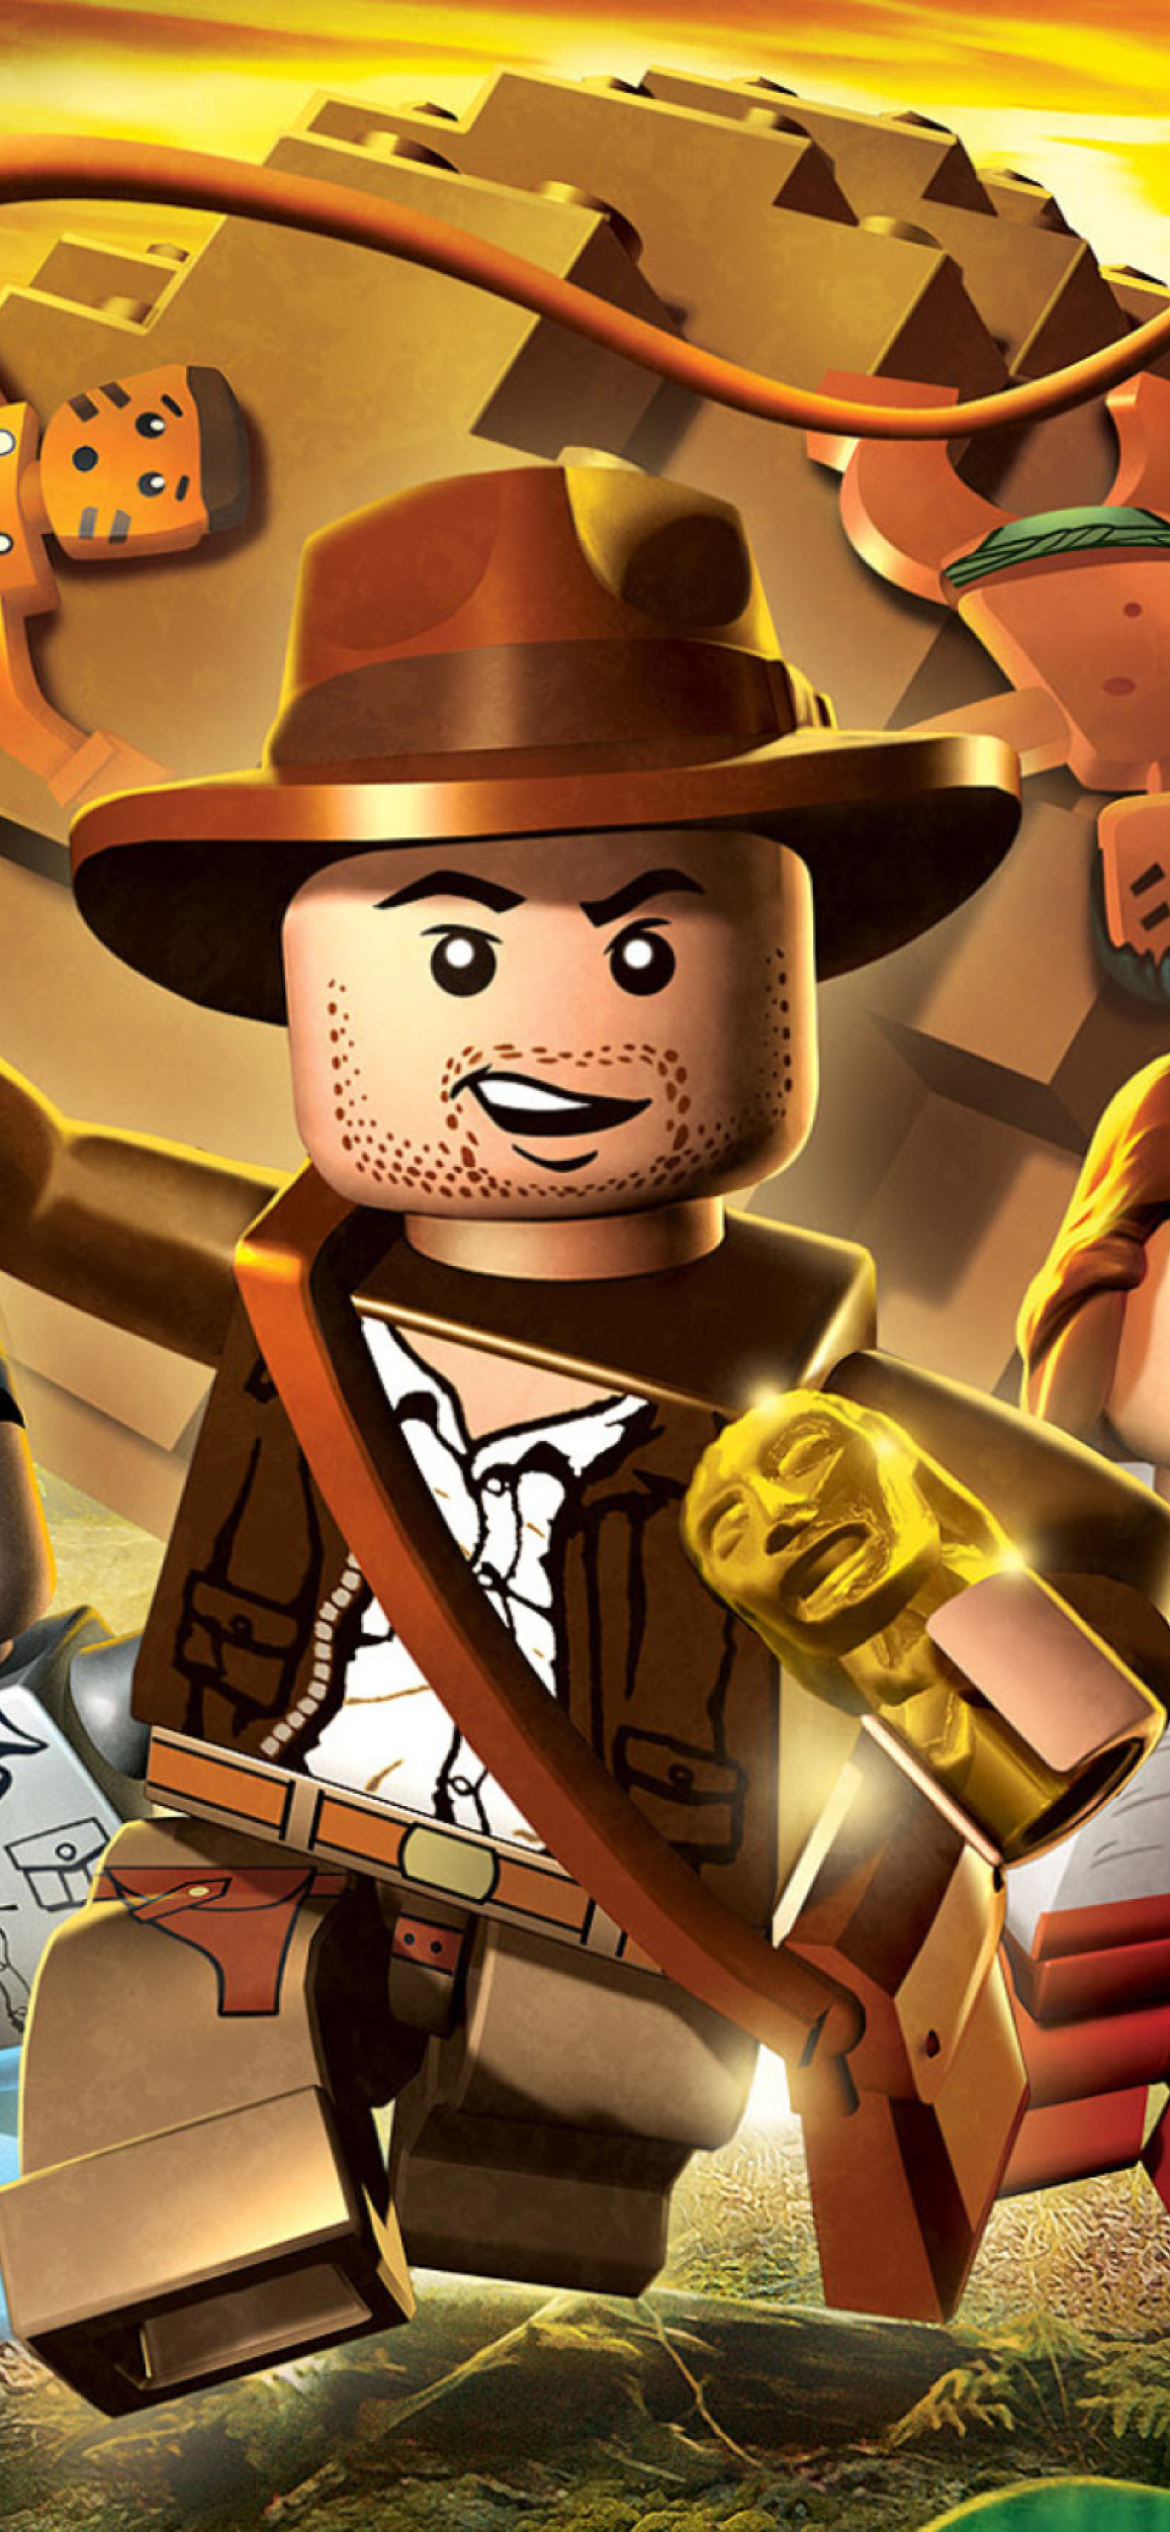 Lego Indiana Jones Wallpaper for iPhone 11